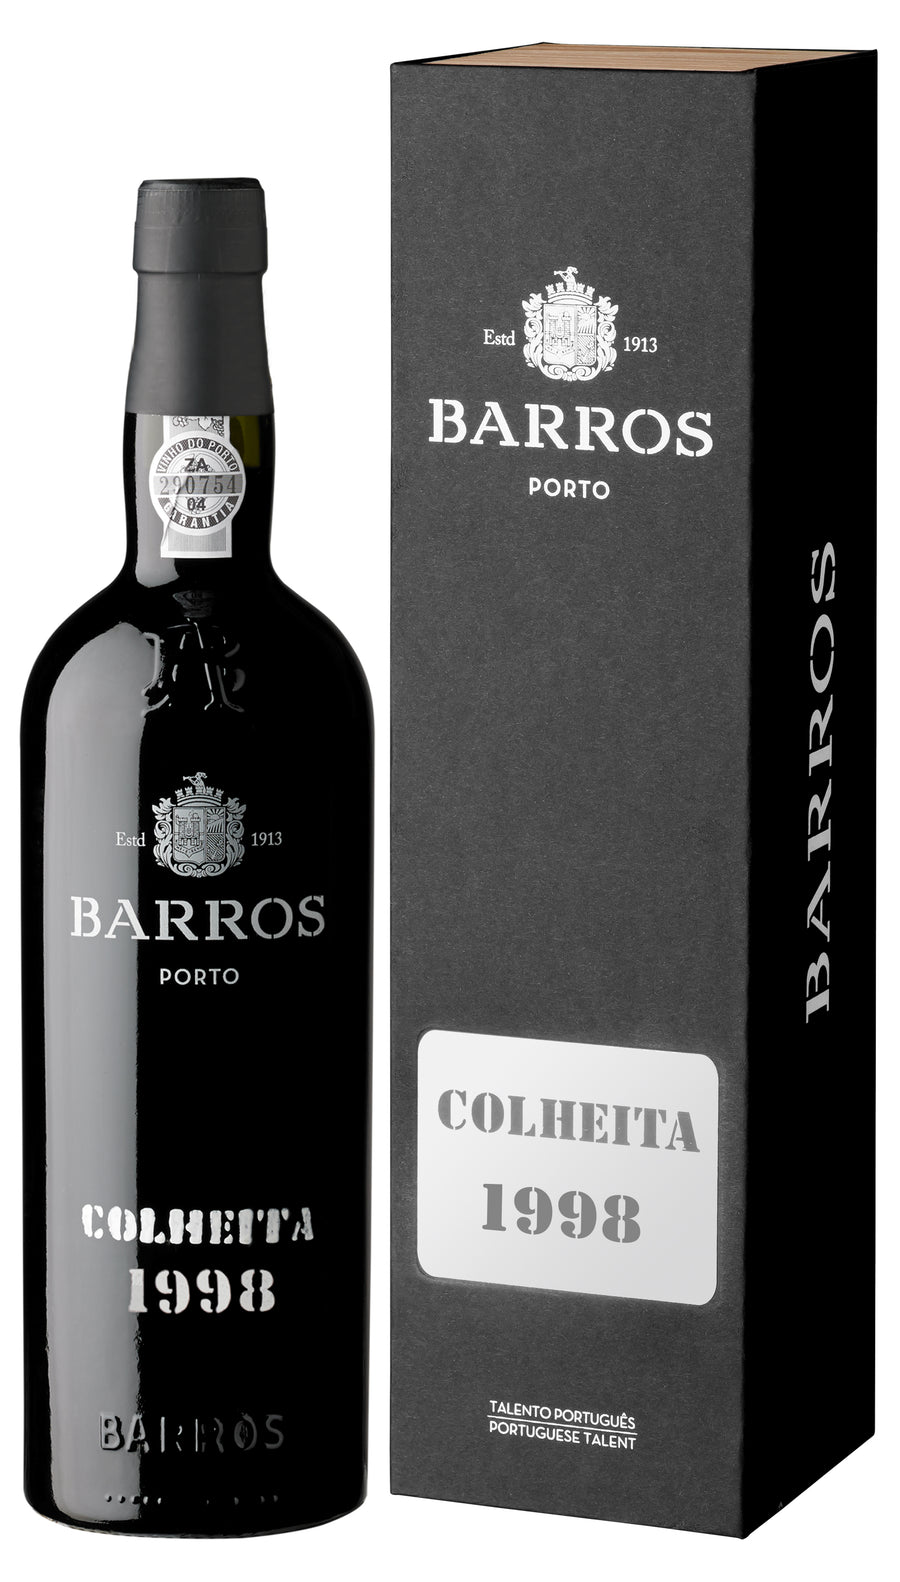 Vinho do Porto Barros Colheita 1998 Tawny